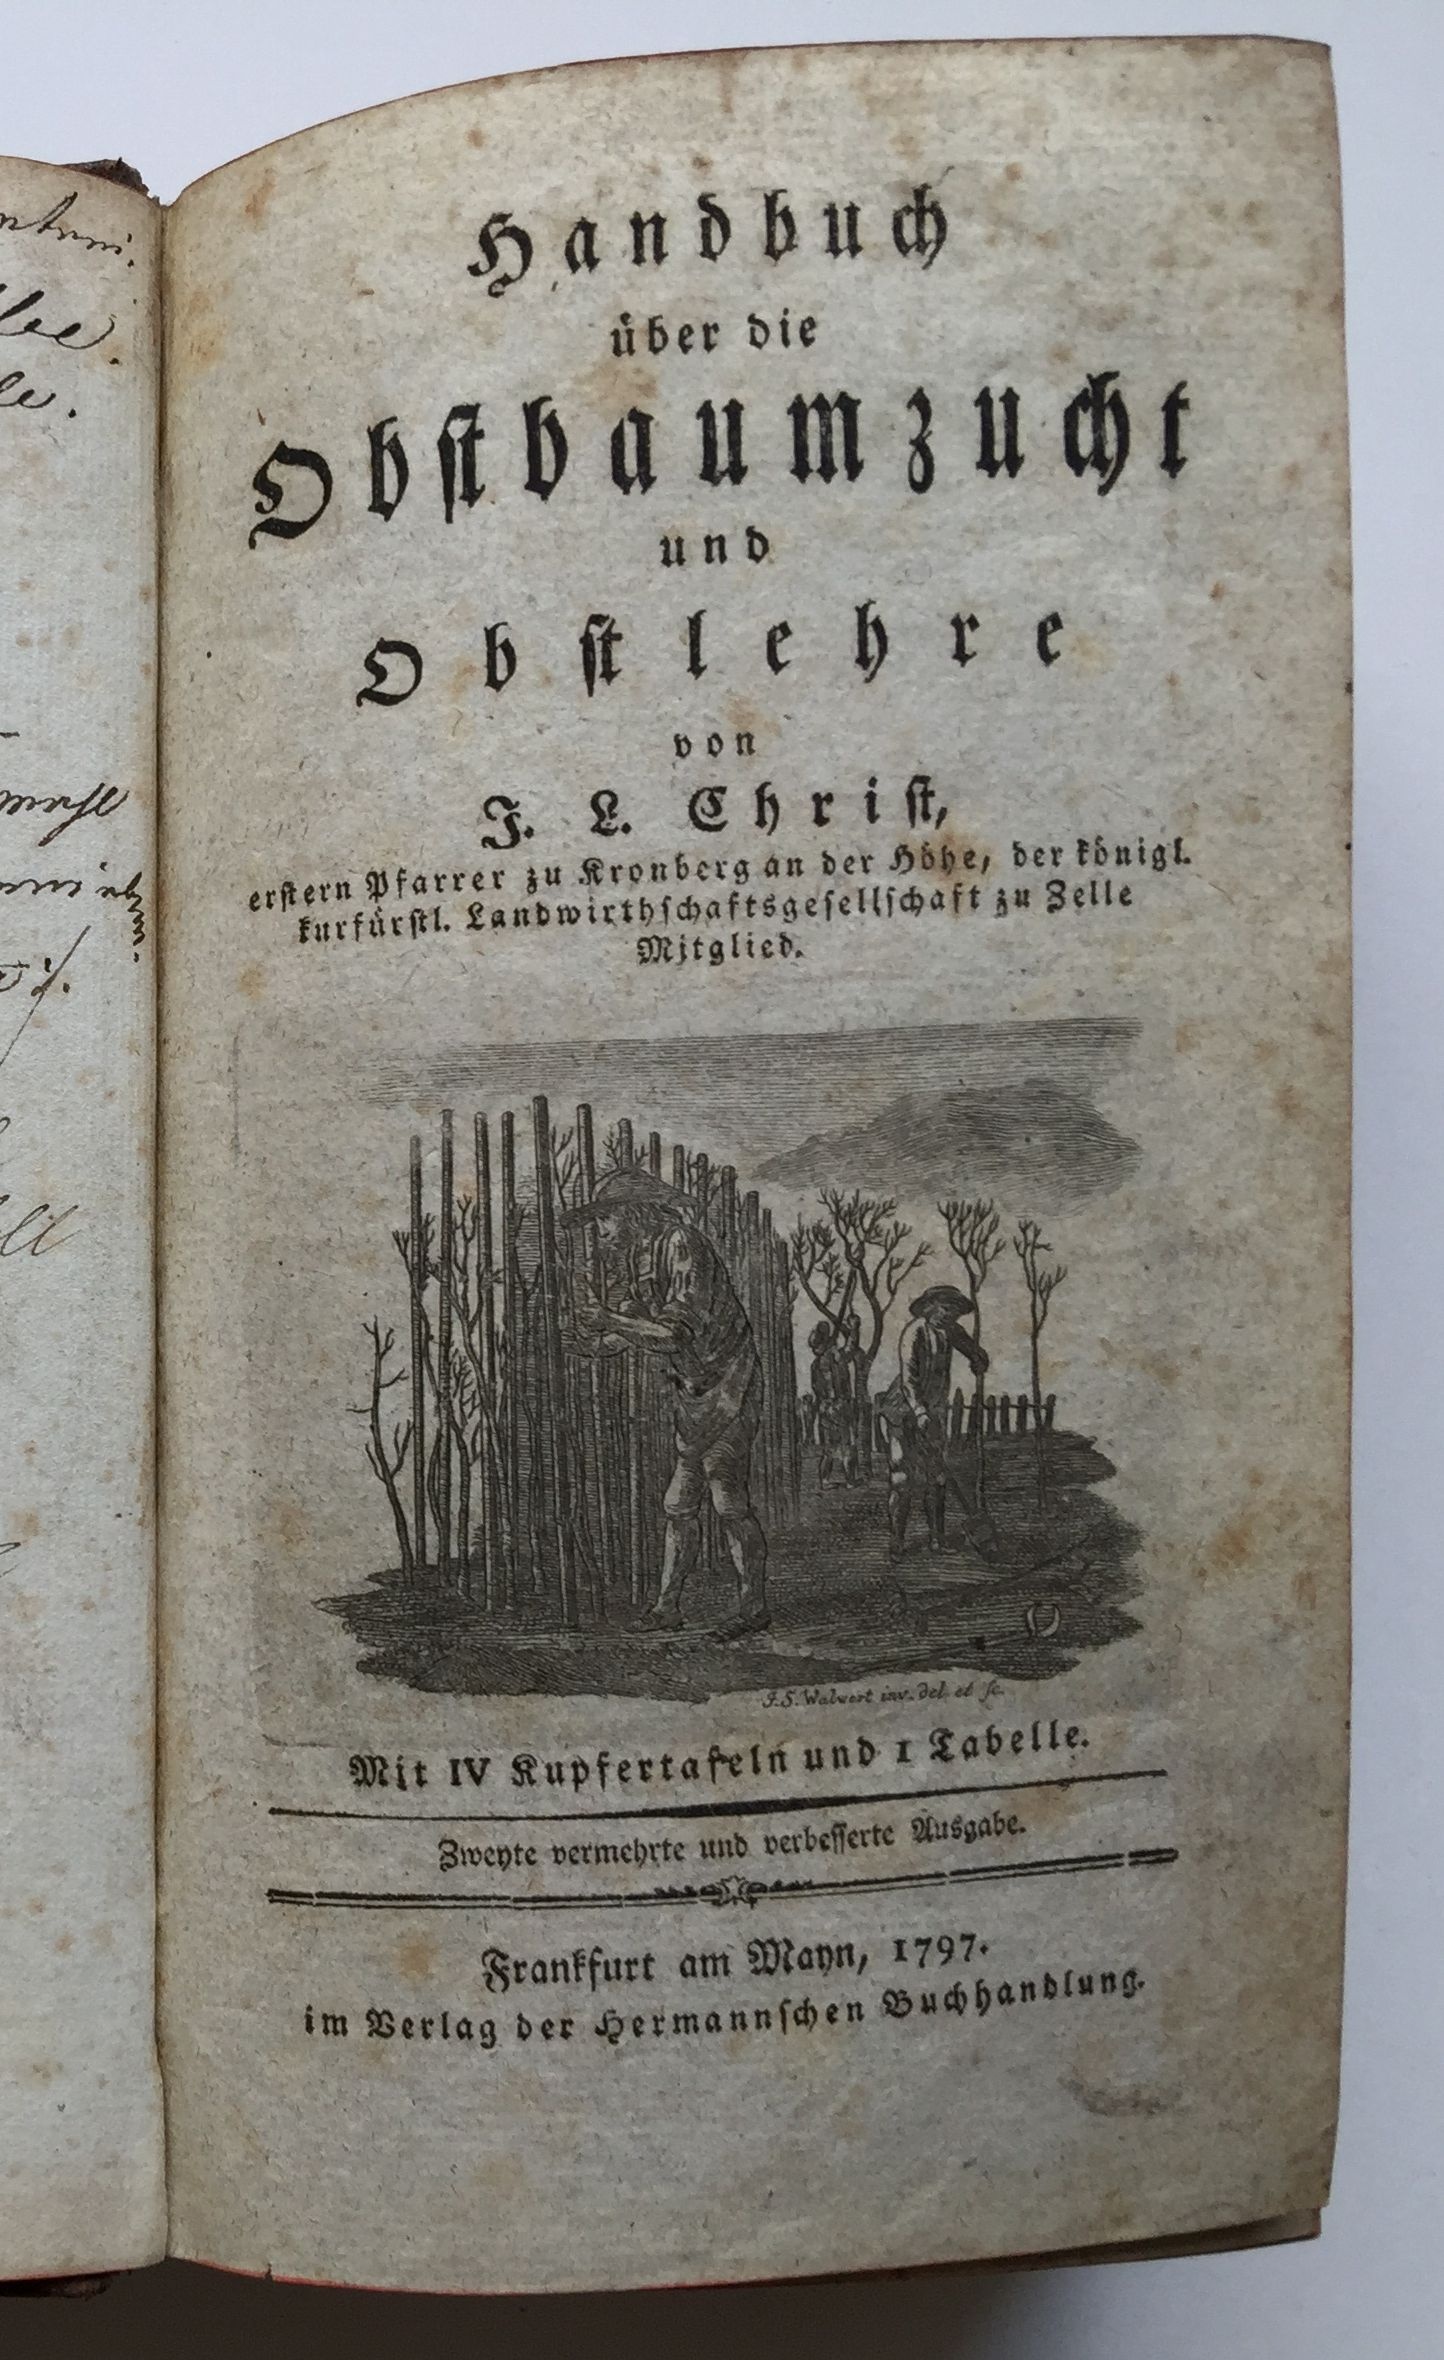 Johann Ludwig Christ, Handbuch über die Obstbaumzucht und Obstlehre. Zweite Auflage, 1797. (Taunus-Rhein-Main - Regionalgeschichtliche Sammlung Dr. Stefan Naas CC BY-NC-SA)